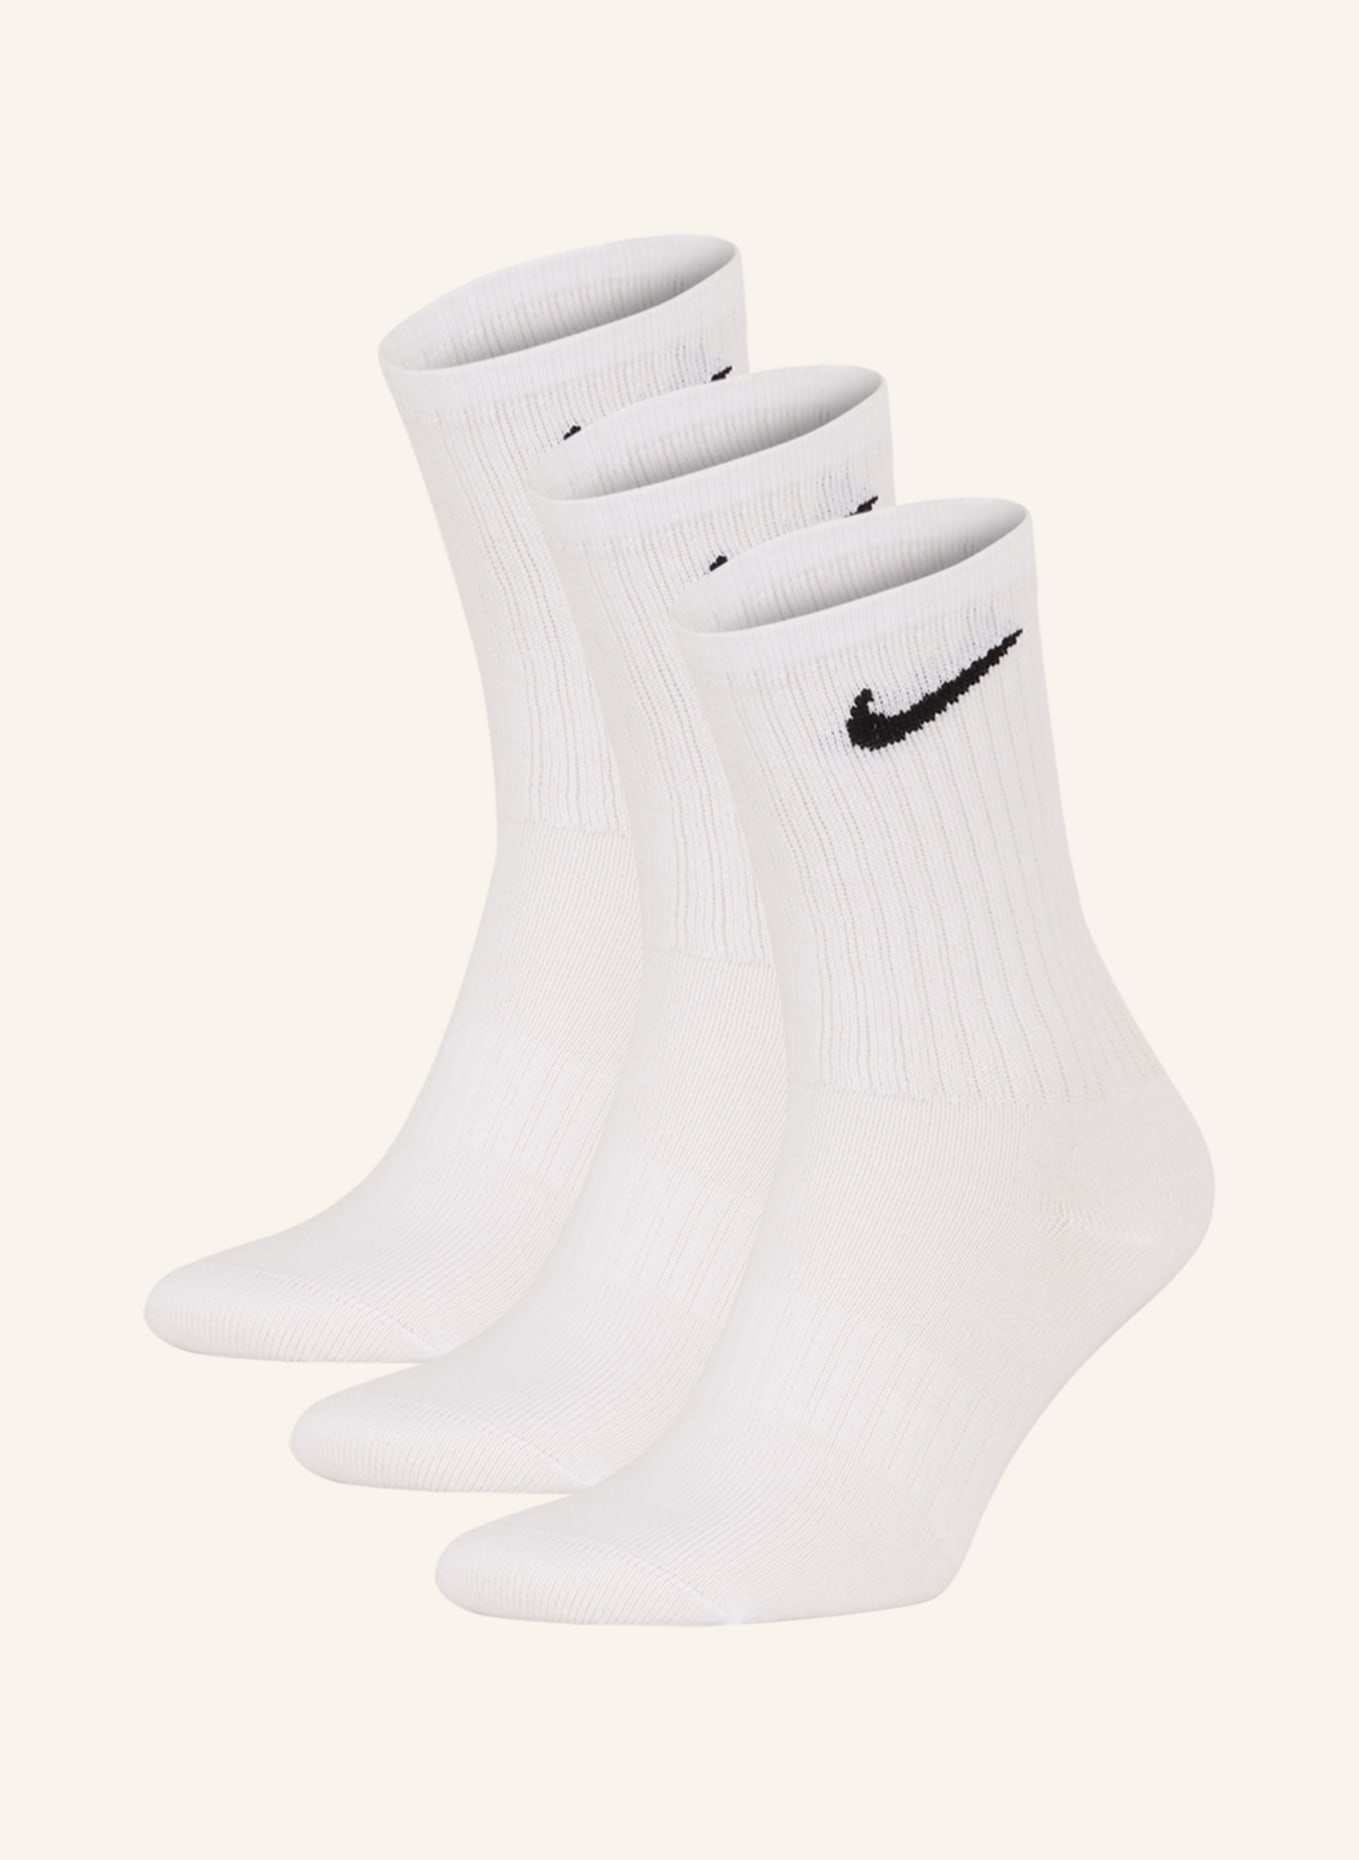 Nike 3er-Sportsocken EVERDAY LIGHWEIGHT, Farbe: 100 WHITE/BLACK (Bild 1)